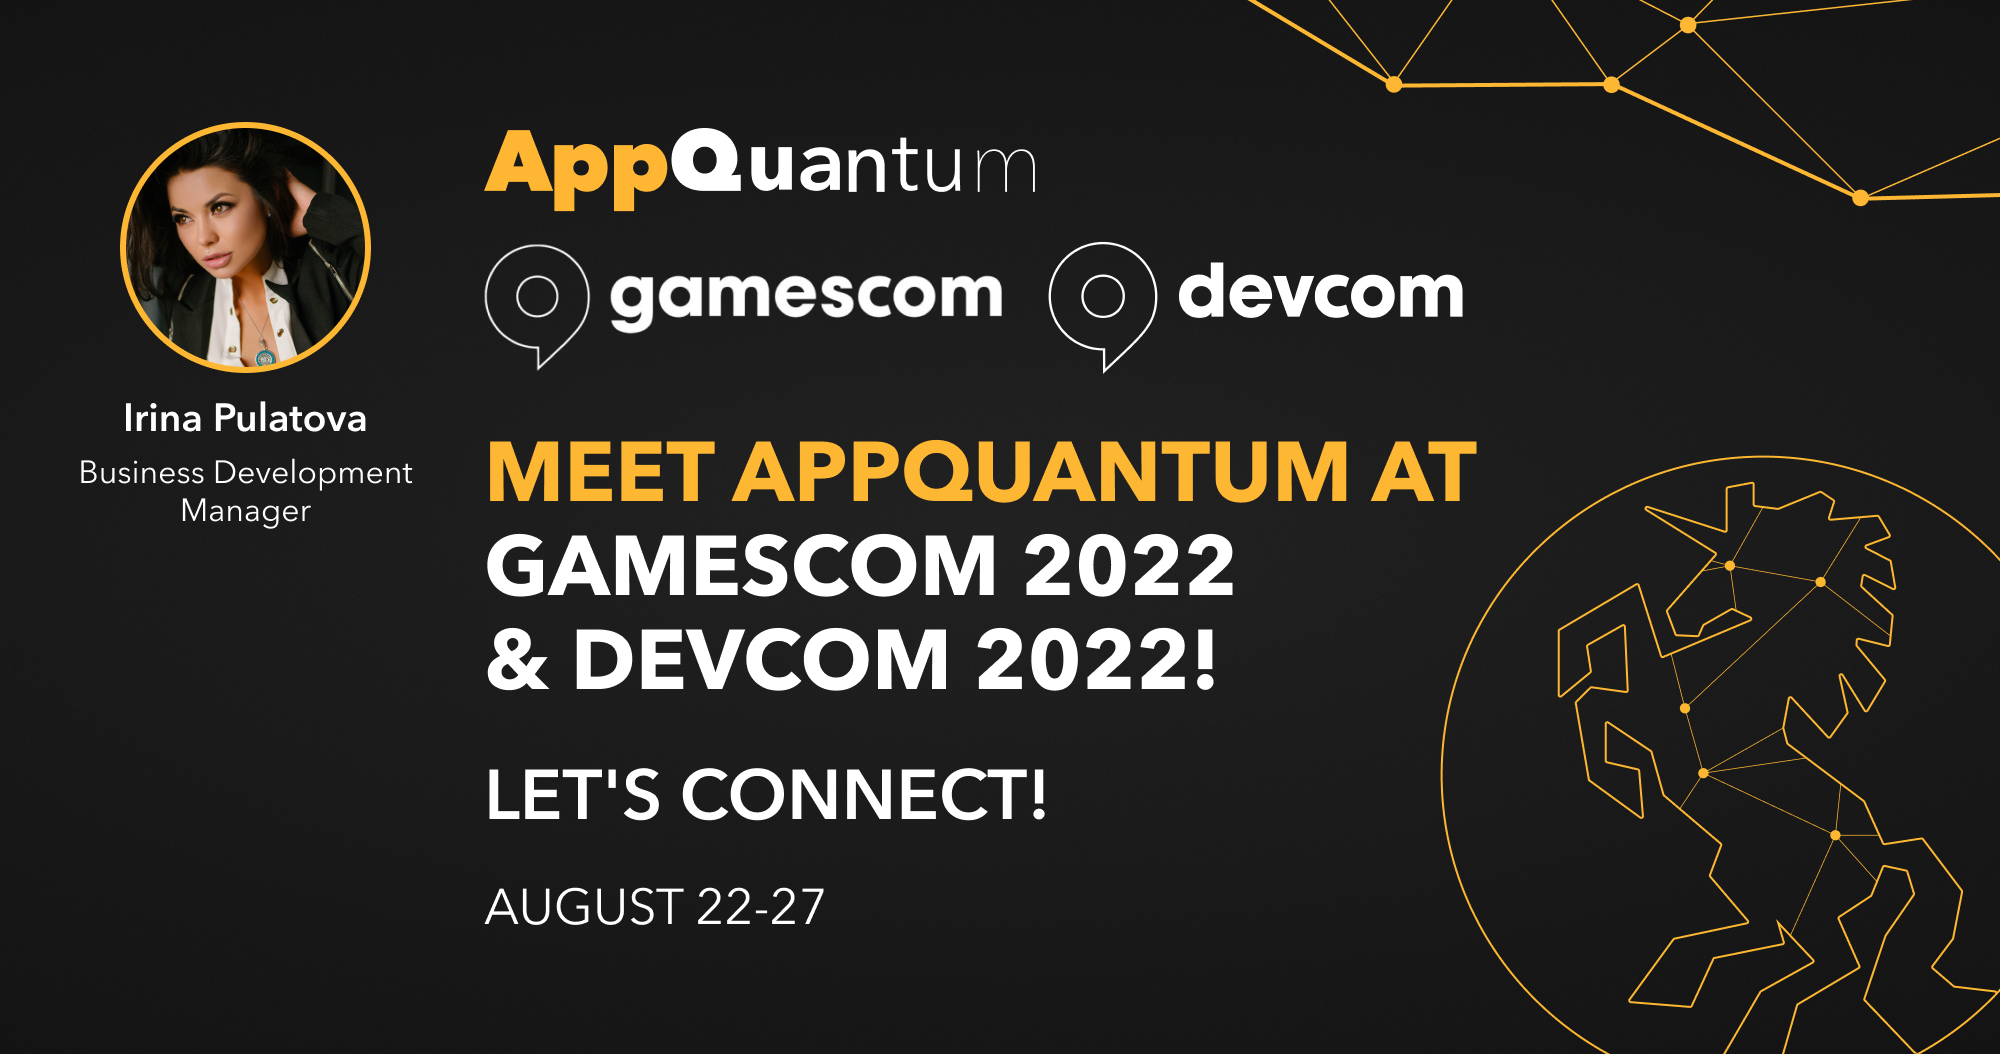 Meet AppQuantum at Gamescom & Devcom 2022!